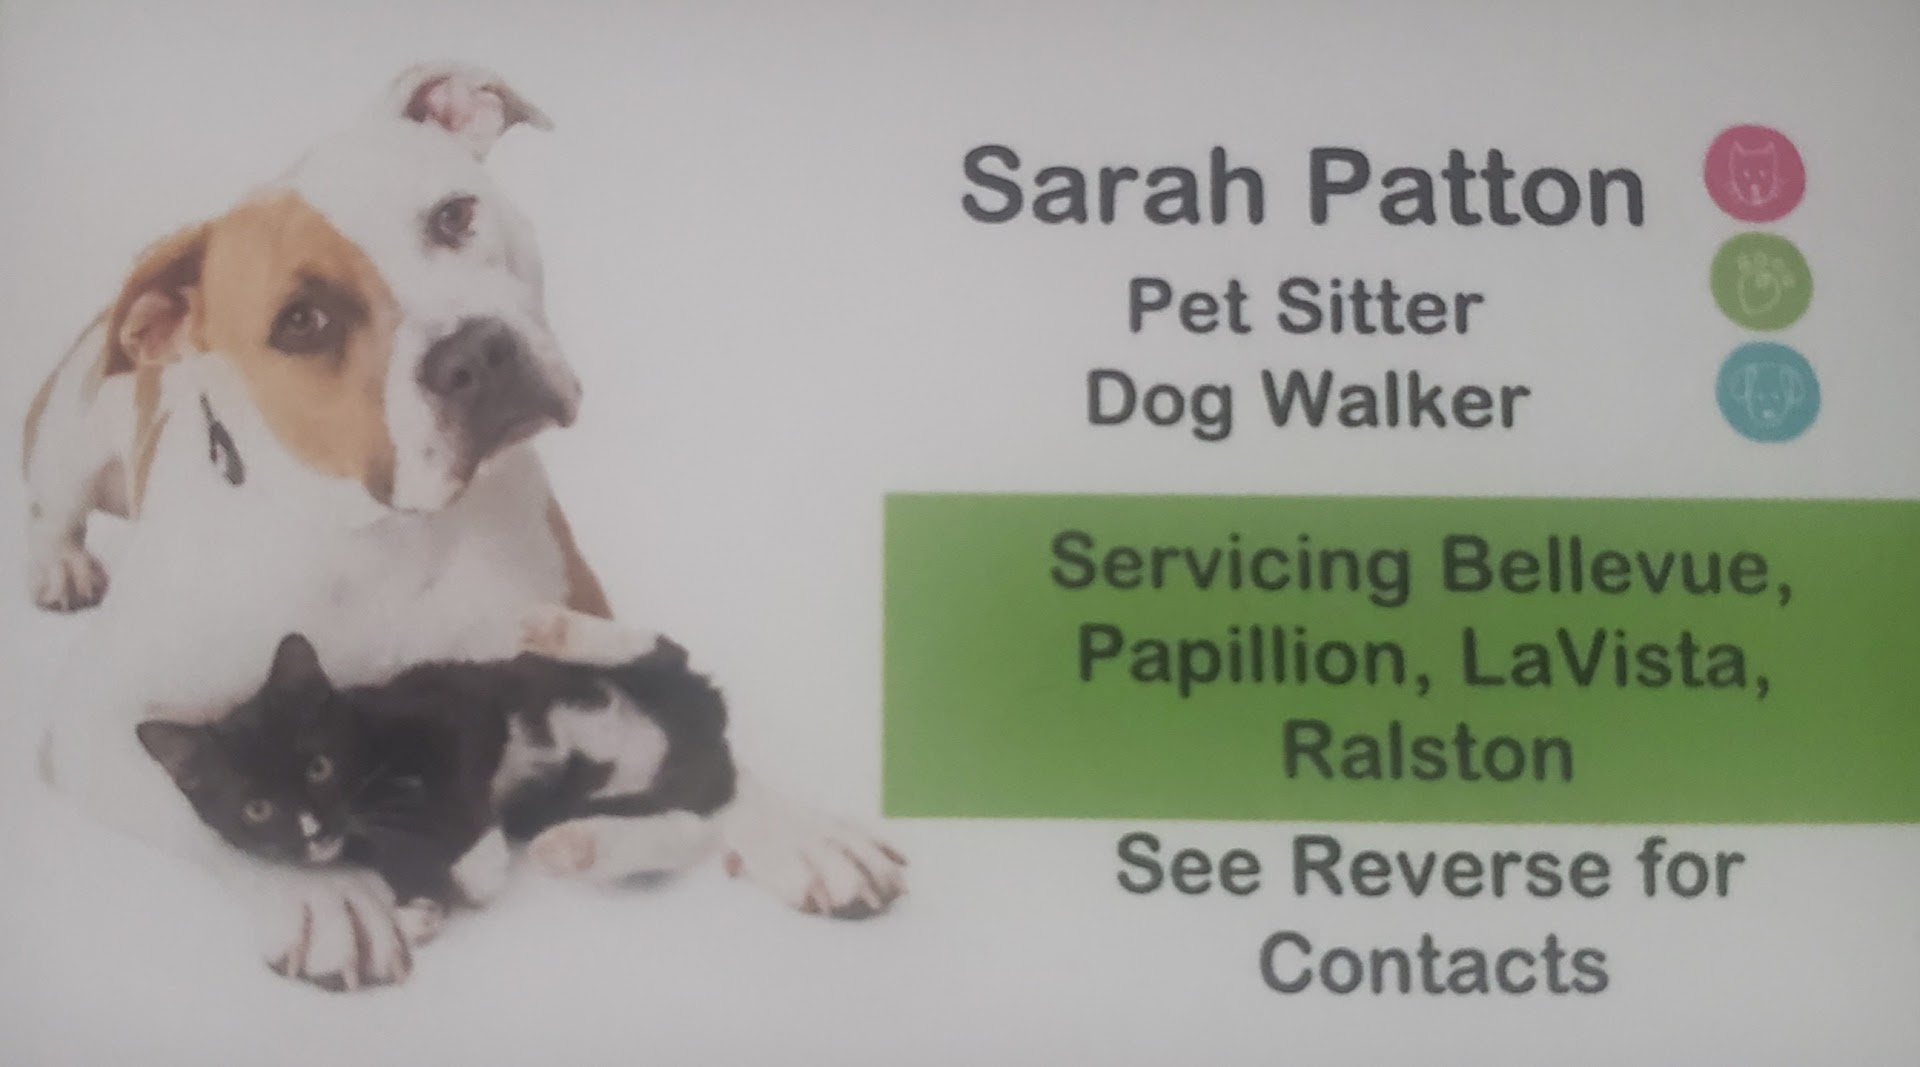 Sarah Patton's Pet Sitting Services